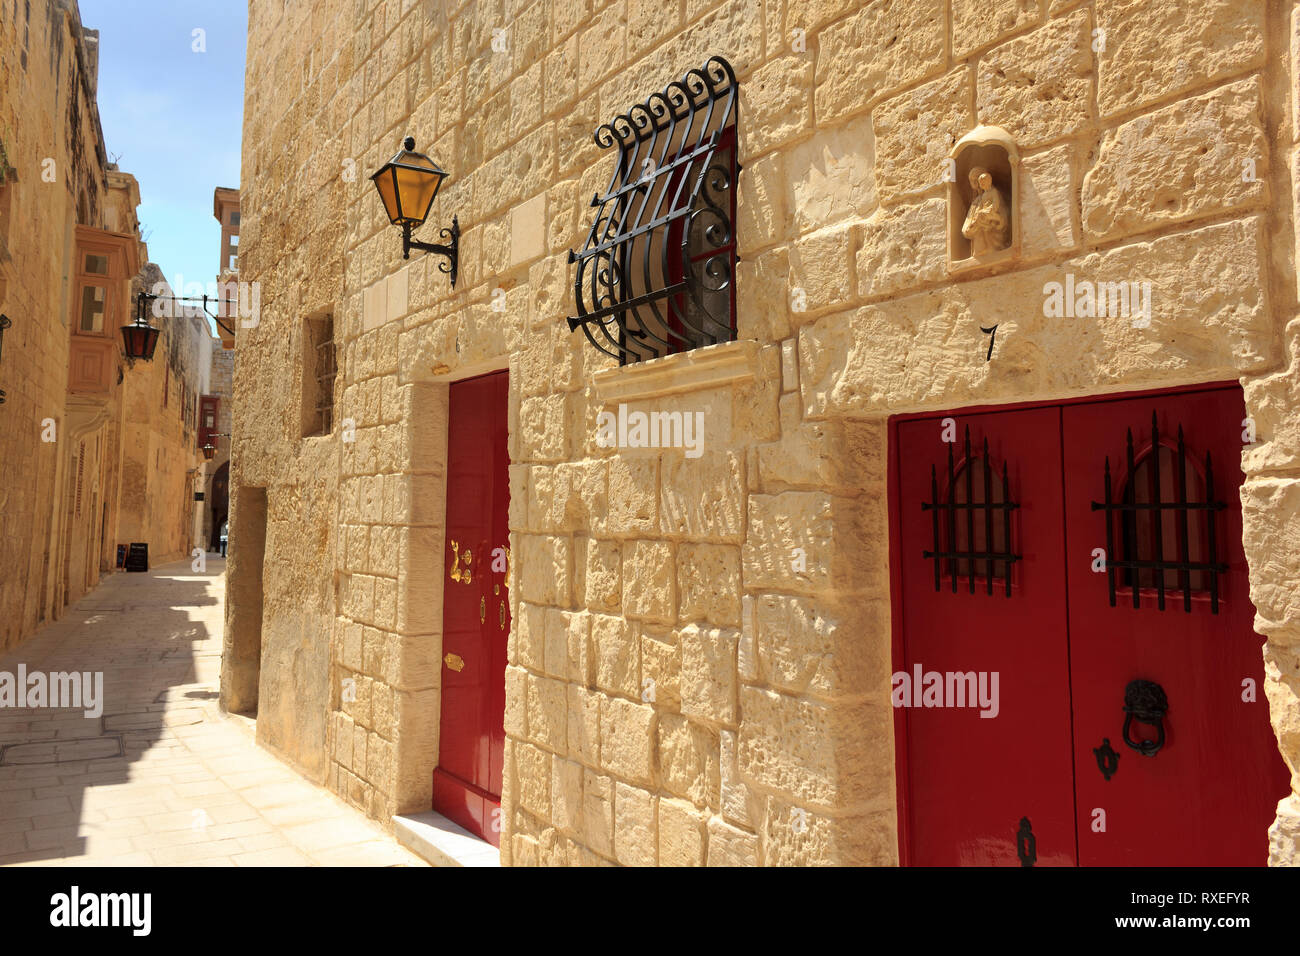 Mdina in Malta, Europe Stock Photo